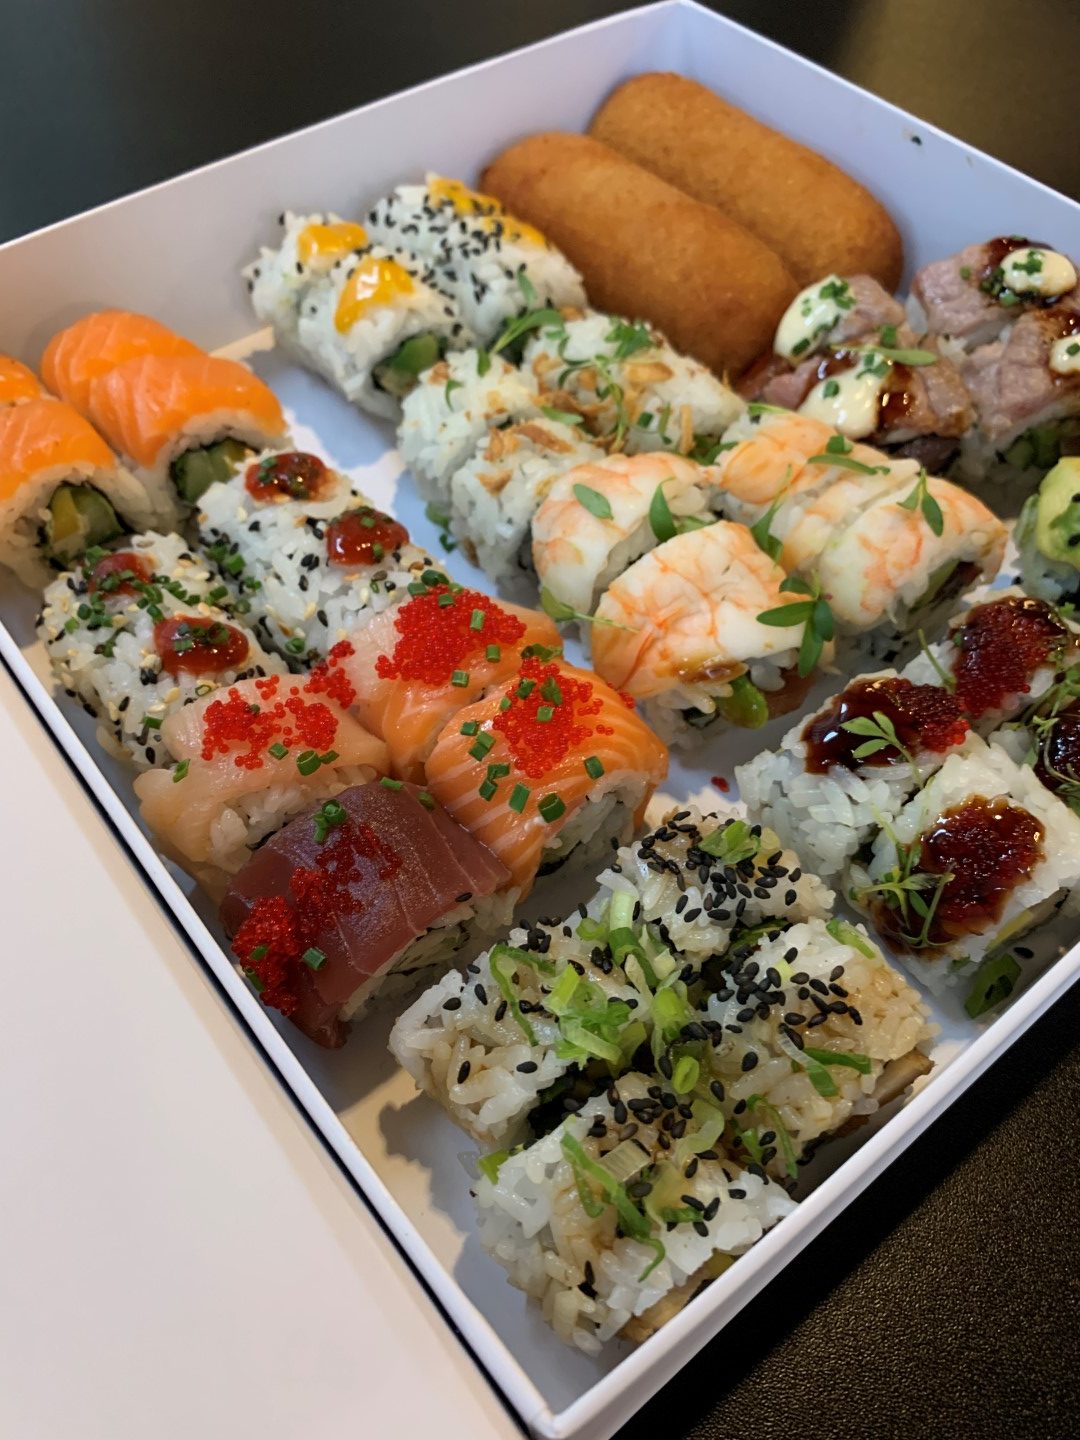 SoHo Sushi predstavio novitete za istinski gastro užitak kod kuće